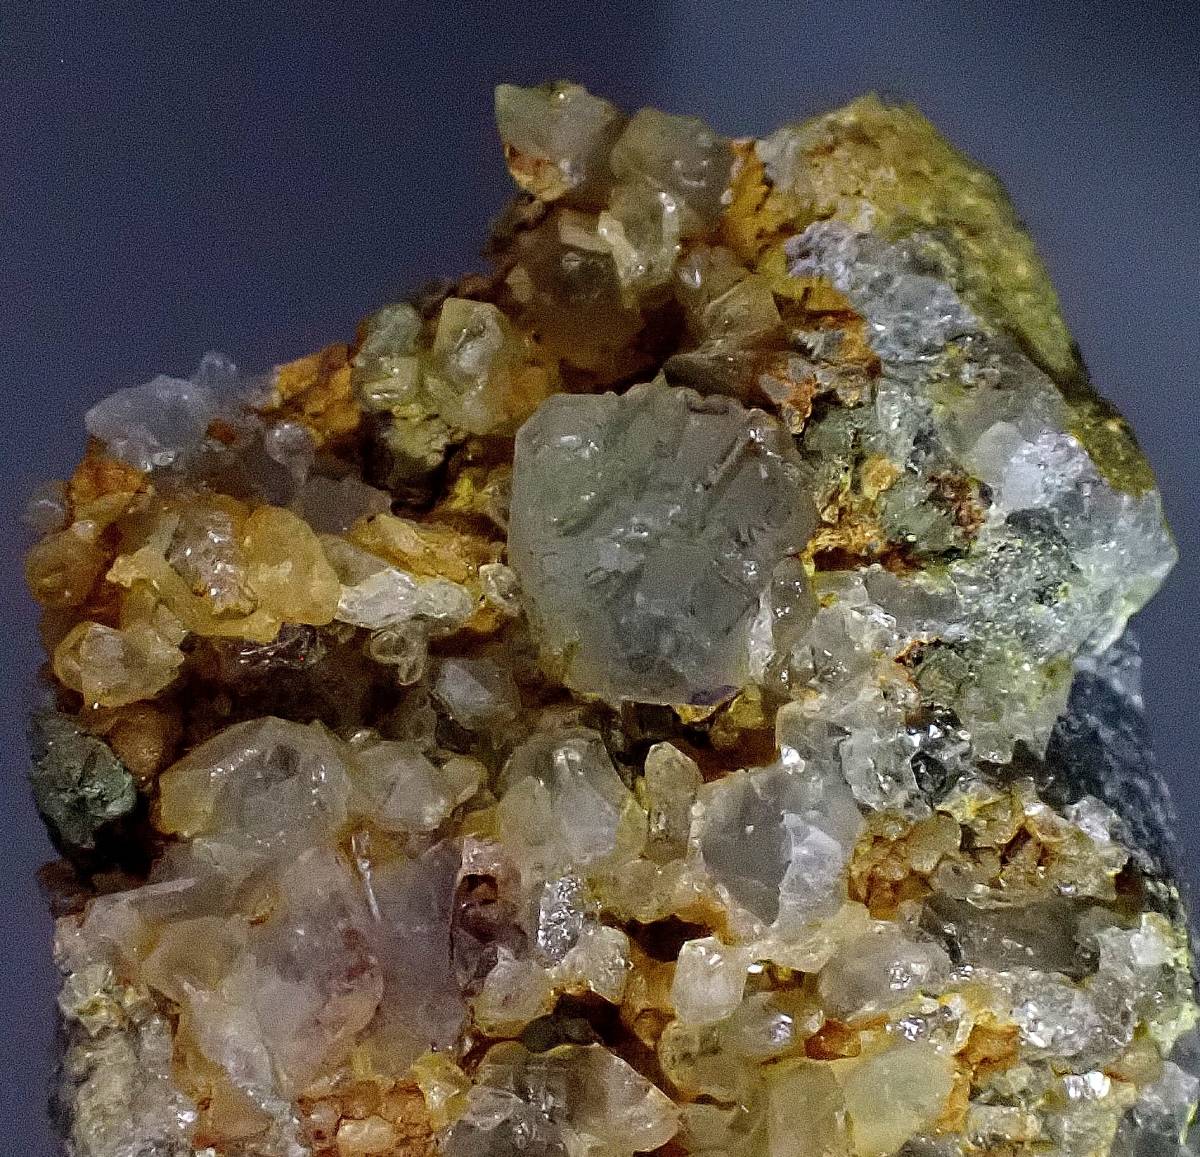 Yahoo!オークション -「国産鉱物 蛍石」(岩石、鉱物) (科学、自然)の 